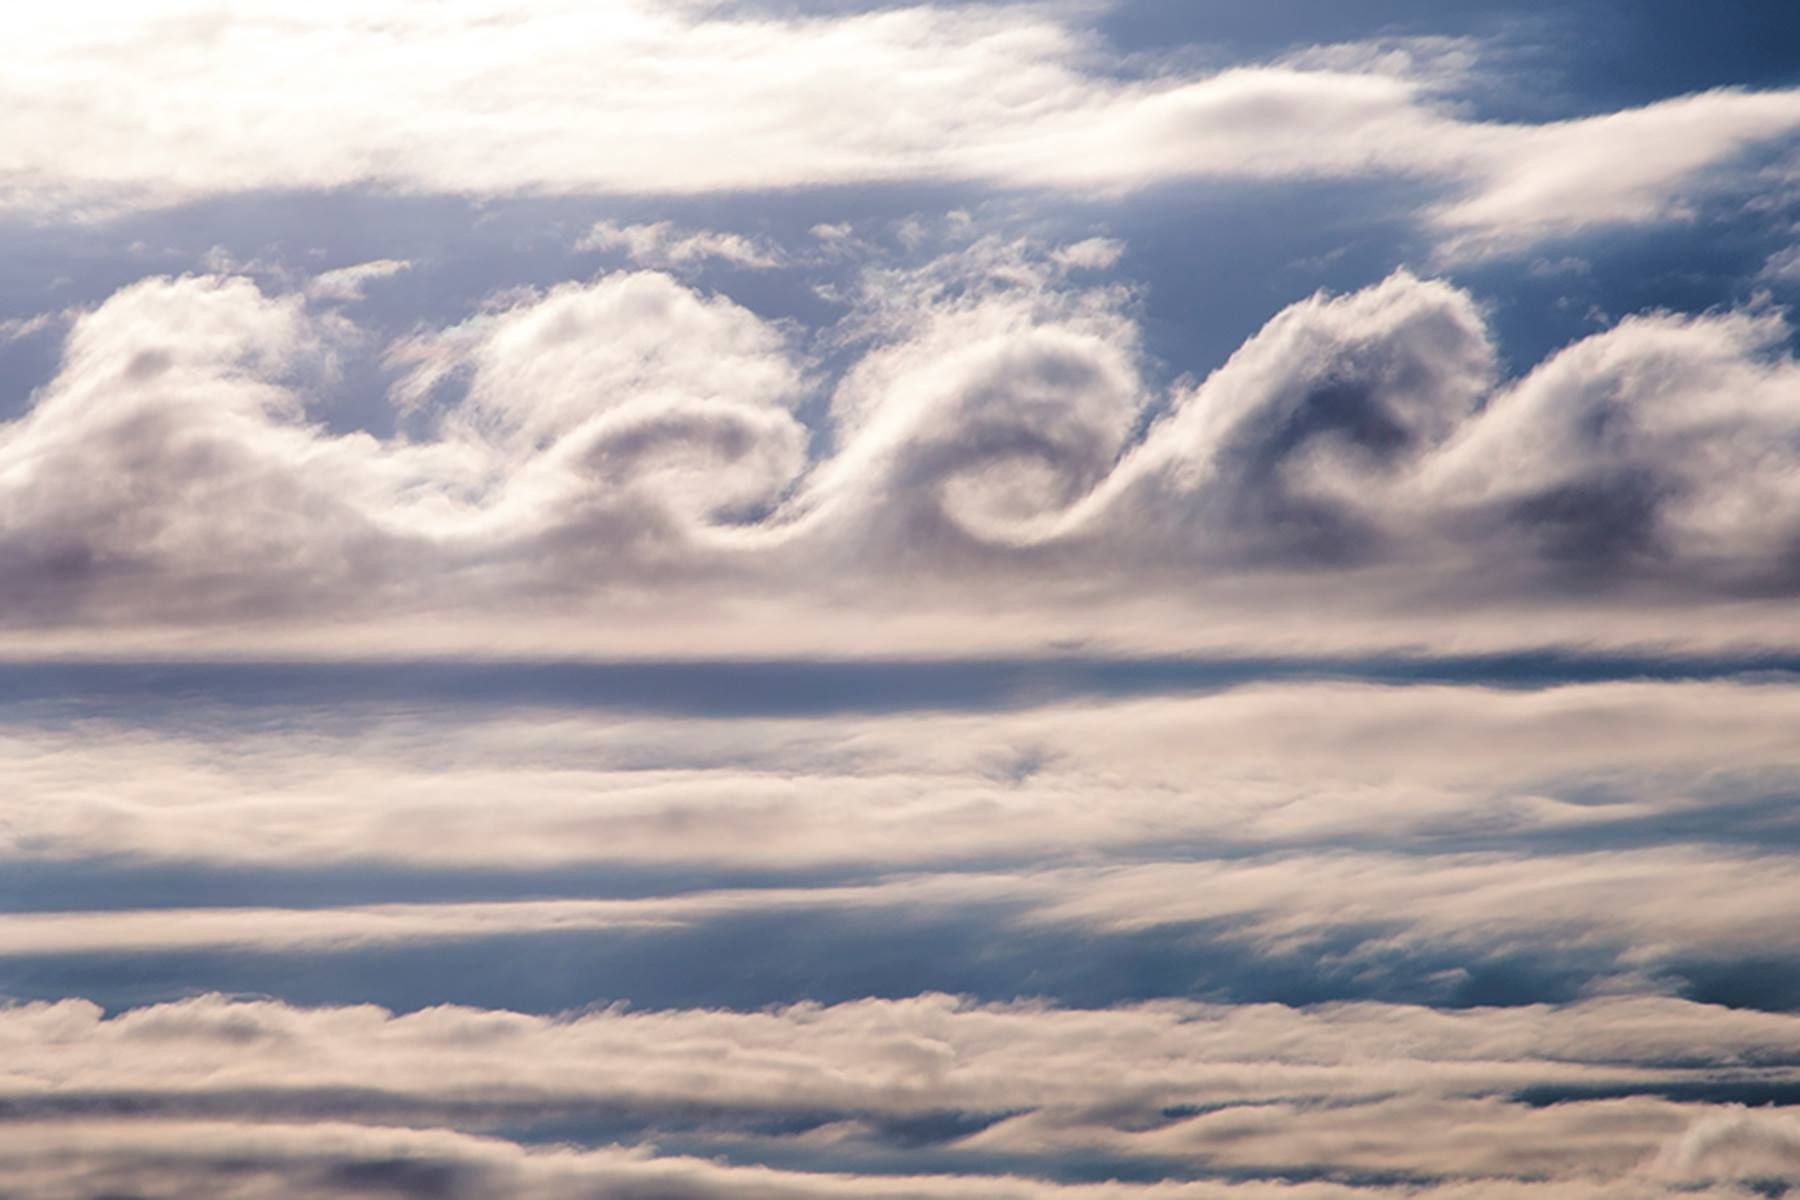 Look at those clouds. Облака Кельвина Гельмгольца. Перистые облака Кельвина-Гельмгольца облака. Перистые завитки Кельвина-Гельмгольца. Облака неустойчивость Кельвина Гельмгольца.